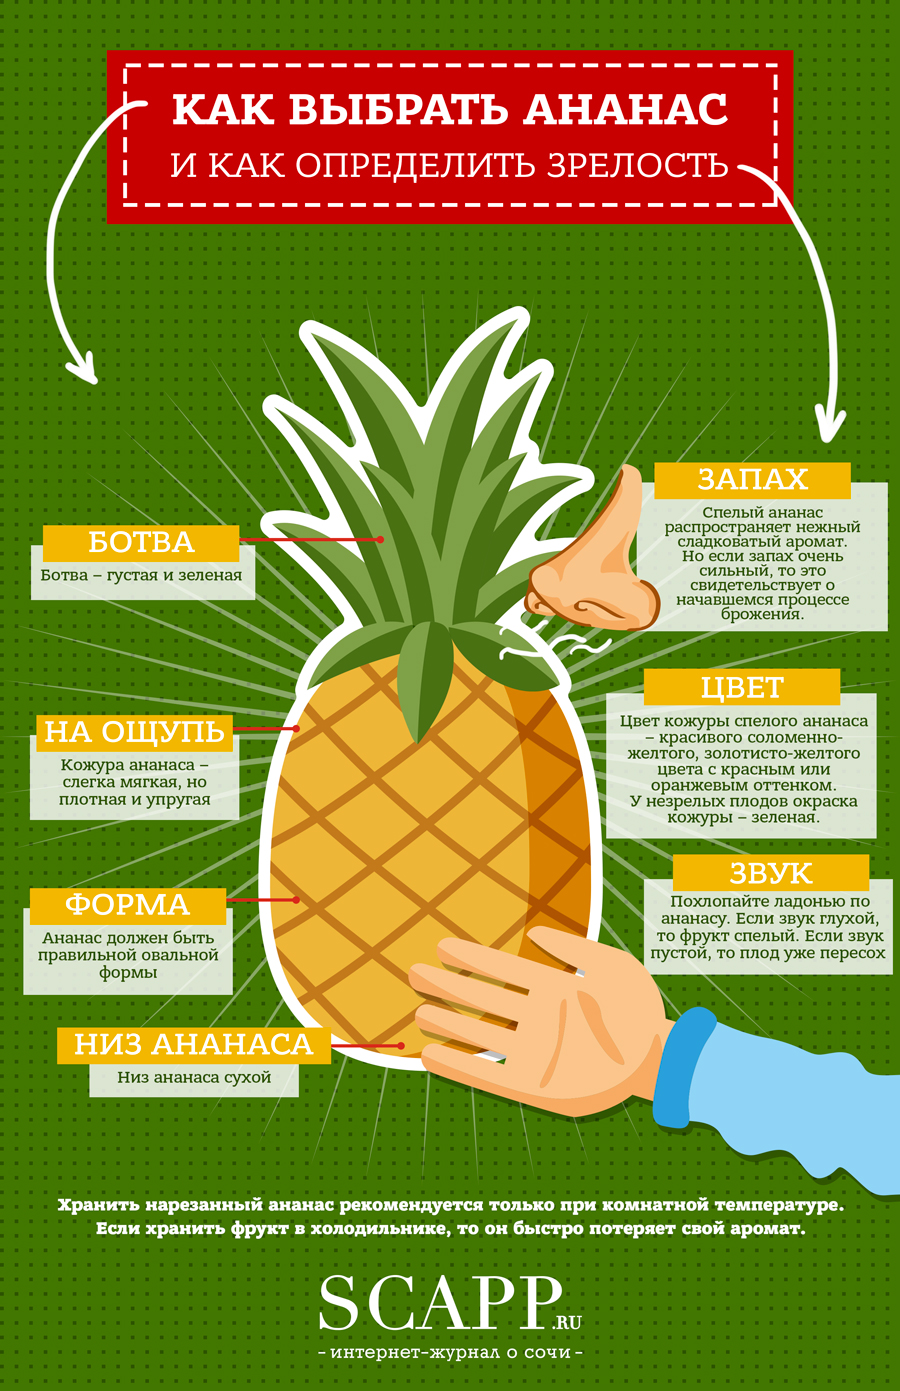 Как правильно выбрать ананас | SCAPP